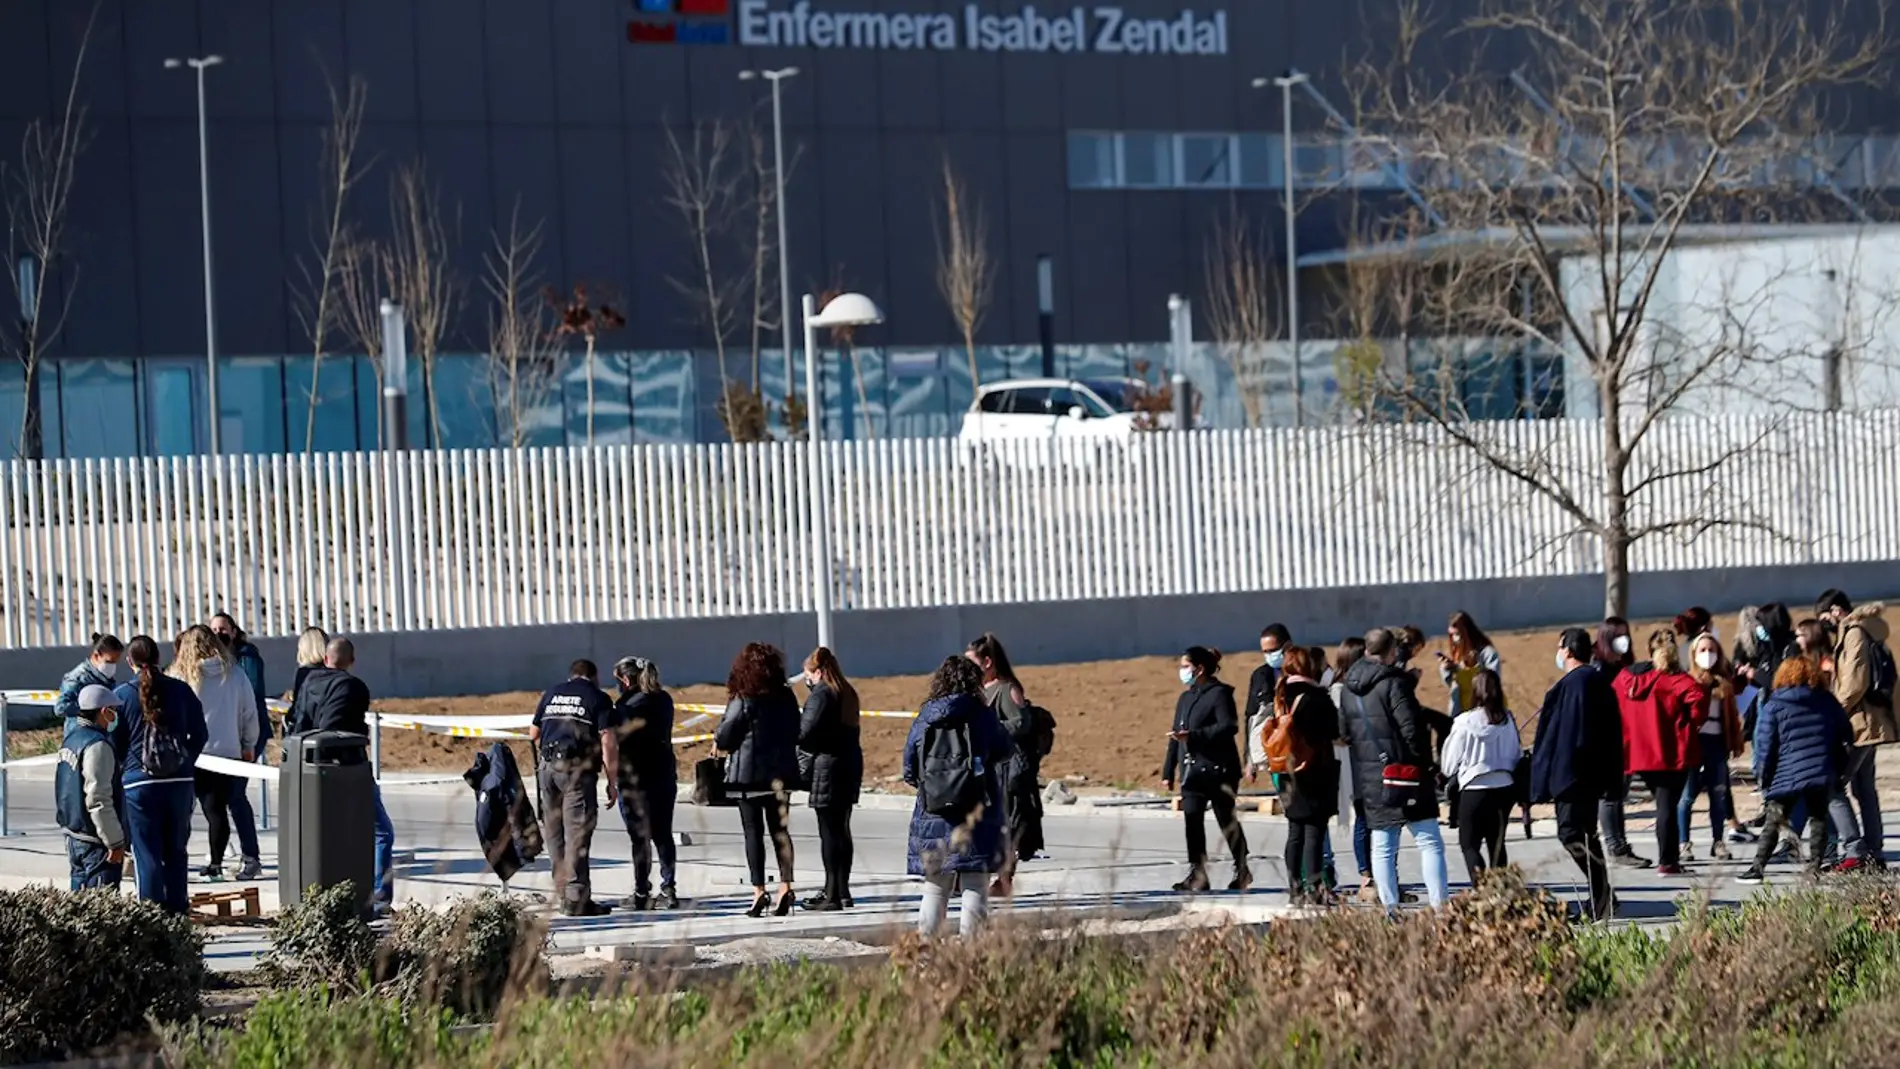  Varias personas esperan a las afueras del Hospital de Emergencias Enfermera Isabel Zendal de Madrid, para ser vacunadas